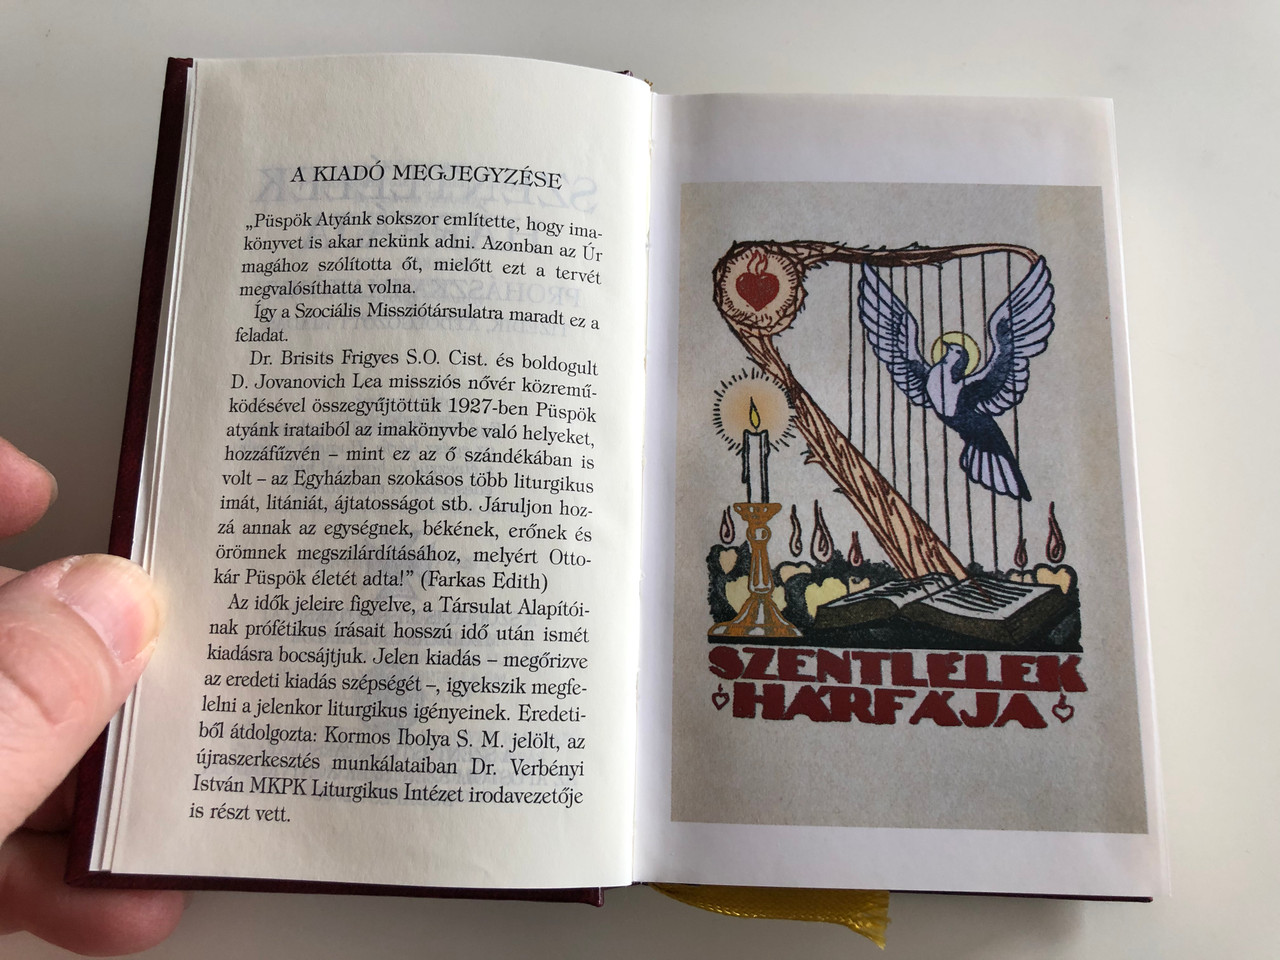 Szentlélek hárfája - Prohászka-Imakönyv / Hungarian Catholic prayer book /  Harp of Holy Spirit / 10th edition / Szent István Társulat 2008 / Hardcover  - bibleinmylanguage